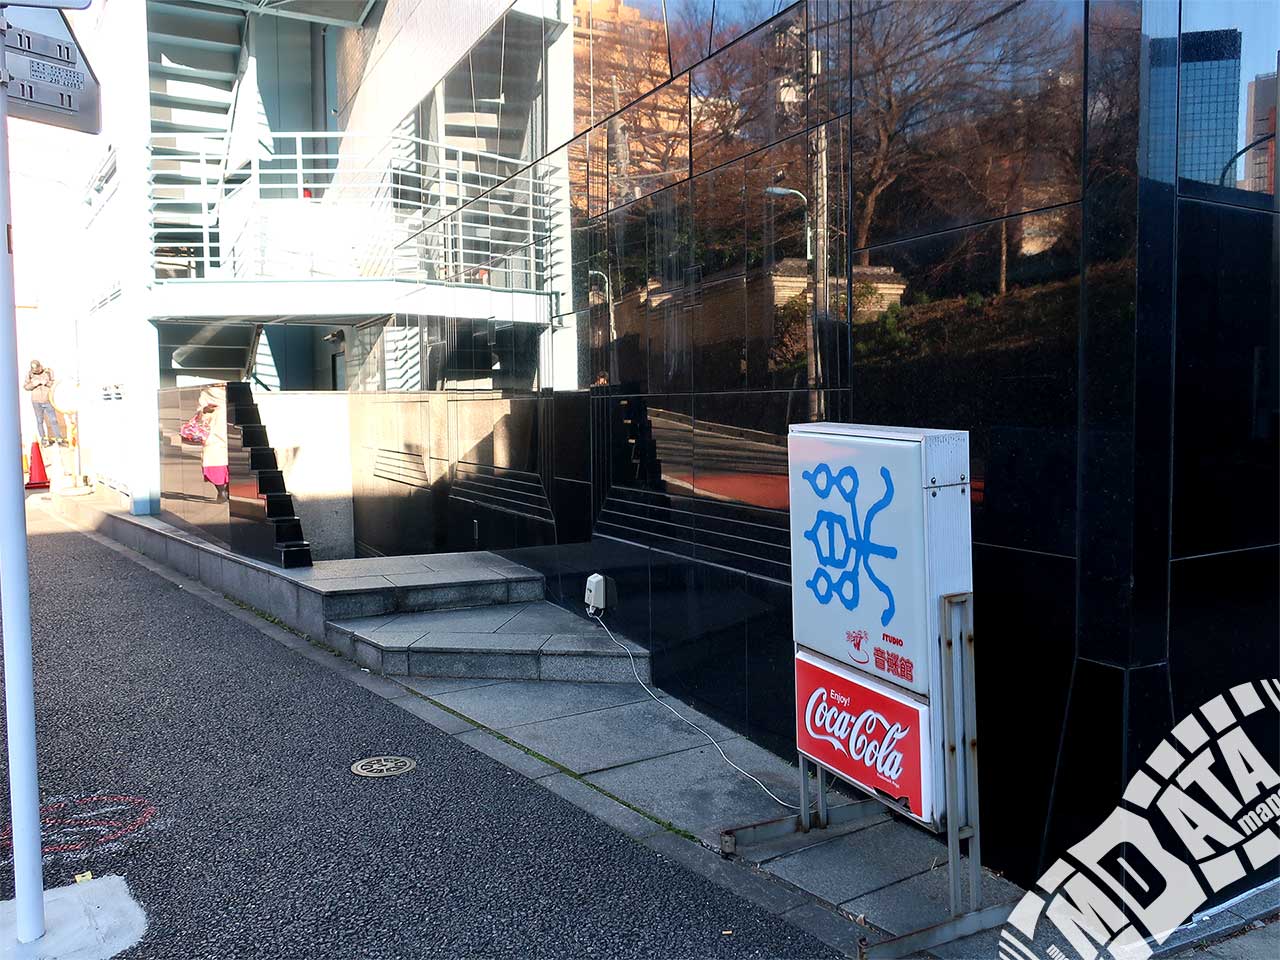 スタジオ音楽館 デュオお茶の水の写真 撮影日:2017/12/21 Photo taken on 2017/12/21